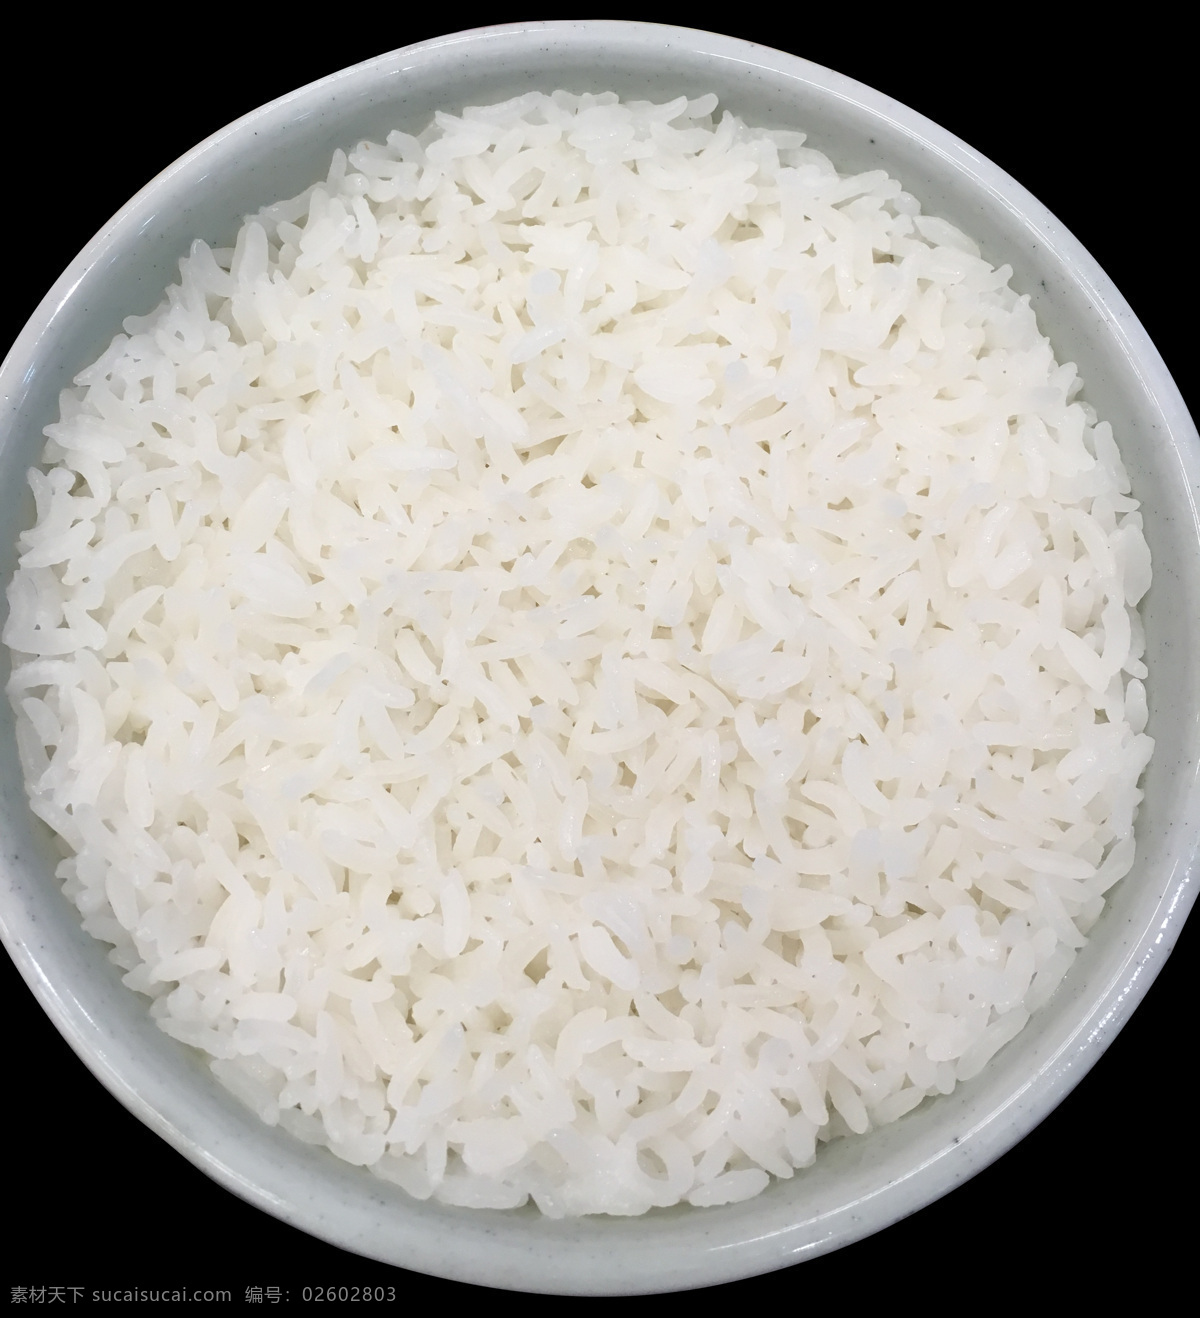 大米饭 米饭海报 饭 水晶大米 五常大米 午餐 餐饮美食 传统美食